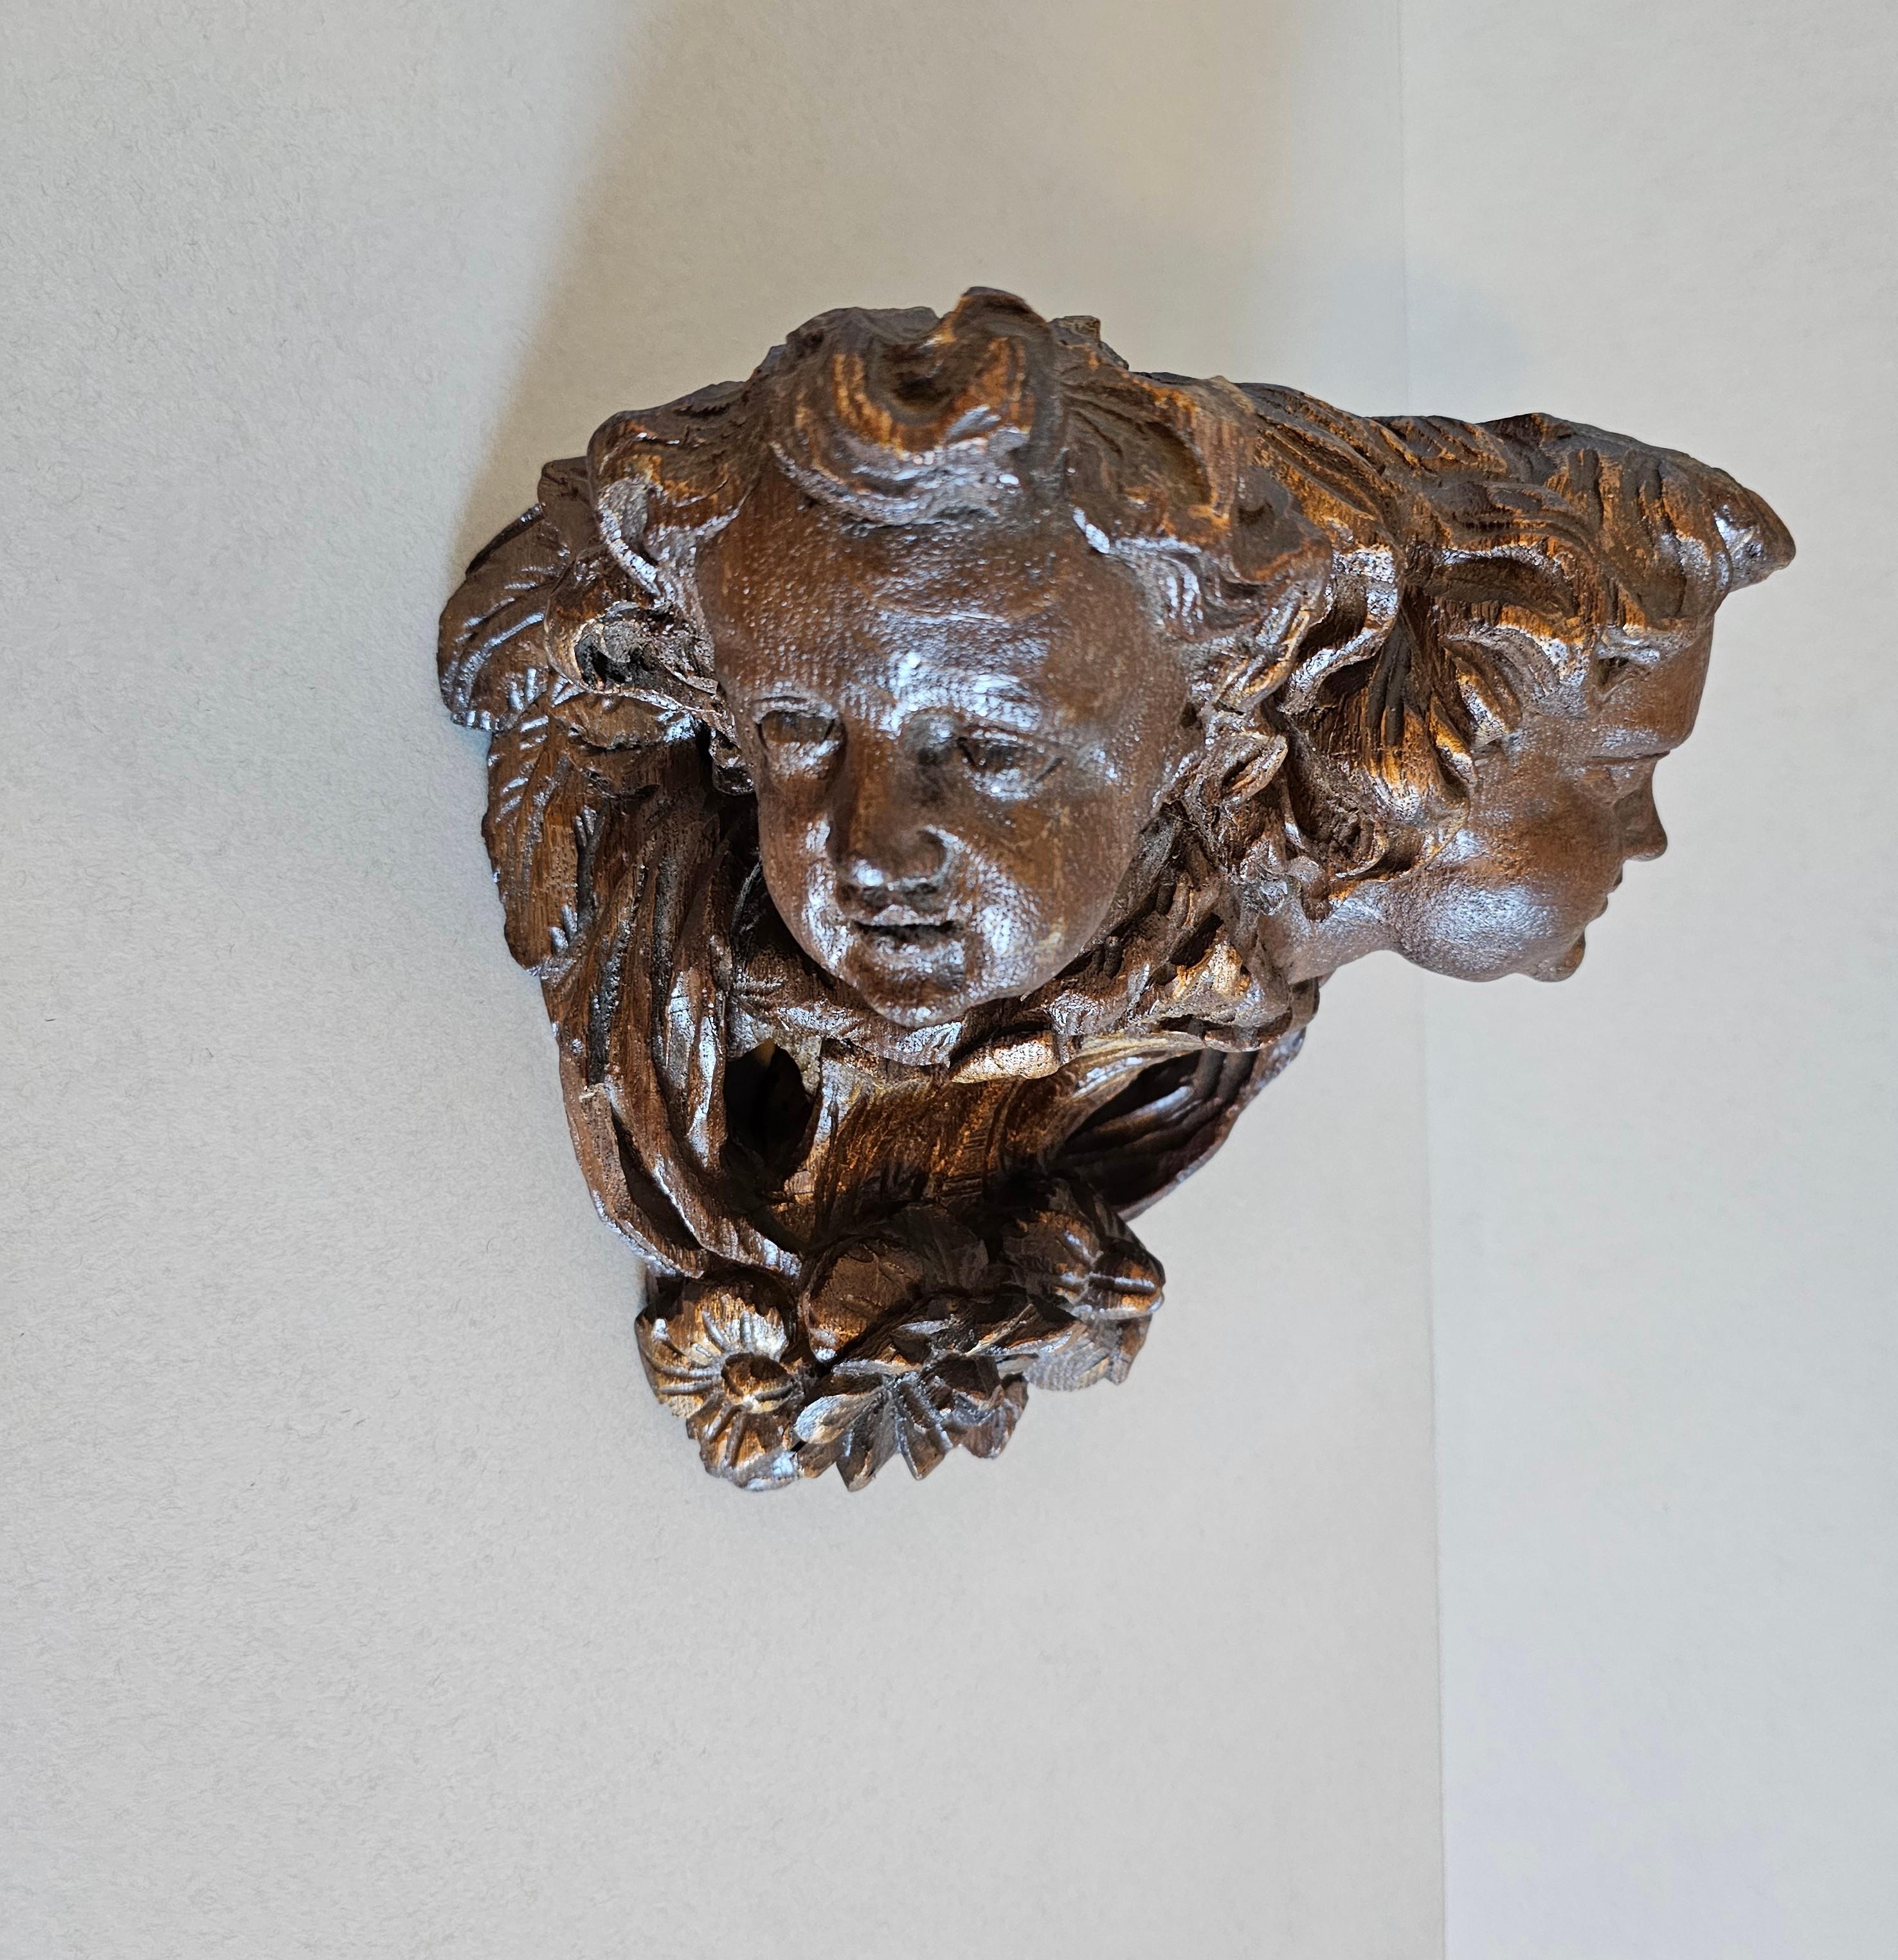 Ein fein geschnitztes architektonisches Element aus der Barockzeit, das jetzt als skulpturales Konsolenregal gestaltet ist. 

Von einem Kunsthandwerker im 18. Jahrhundert handgefertigt, ursprünglich Teil eines Kragsteins, wahrscheinlich aus einer